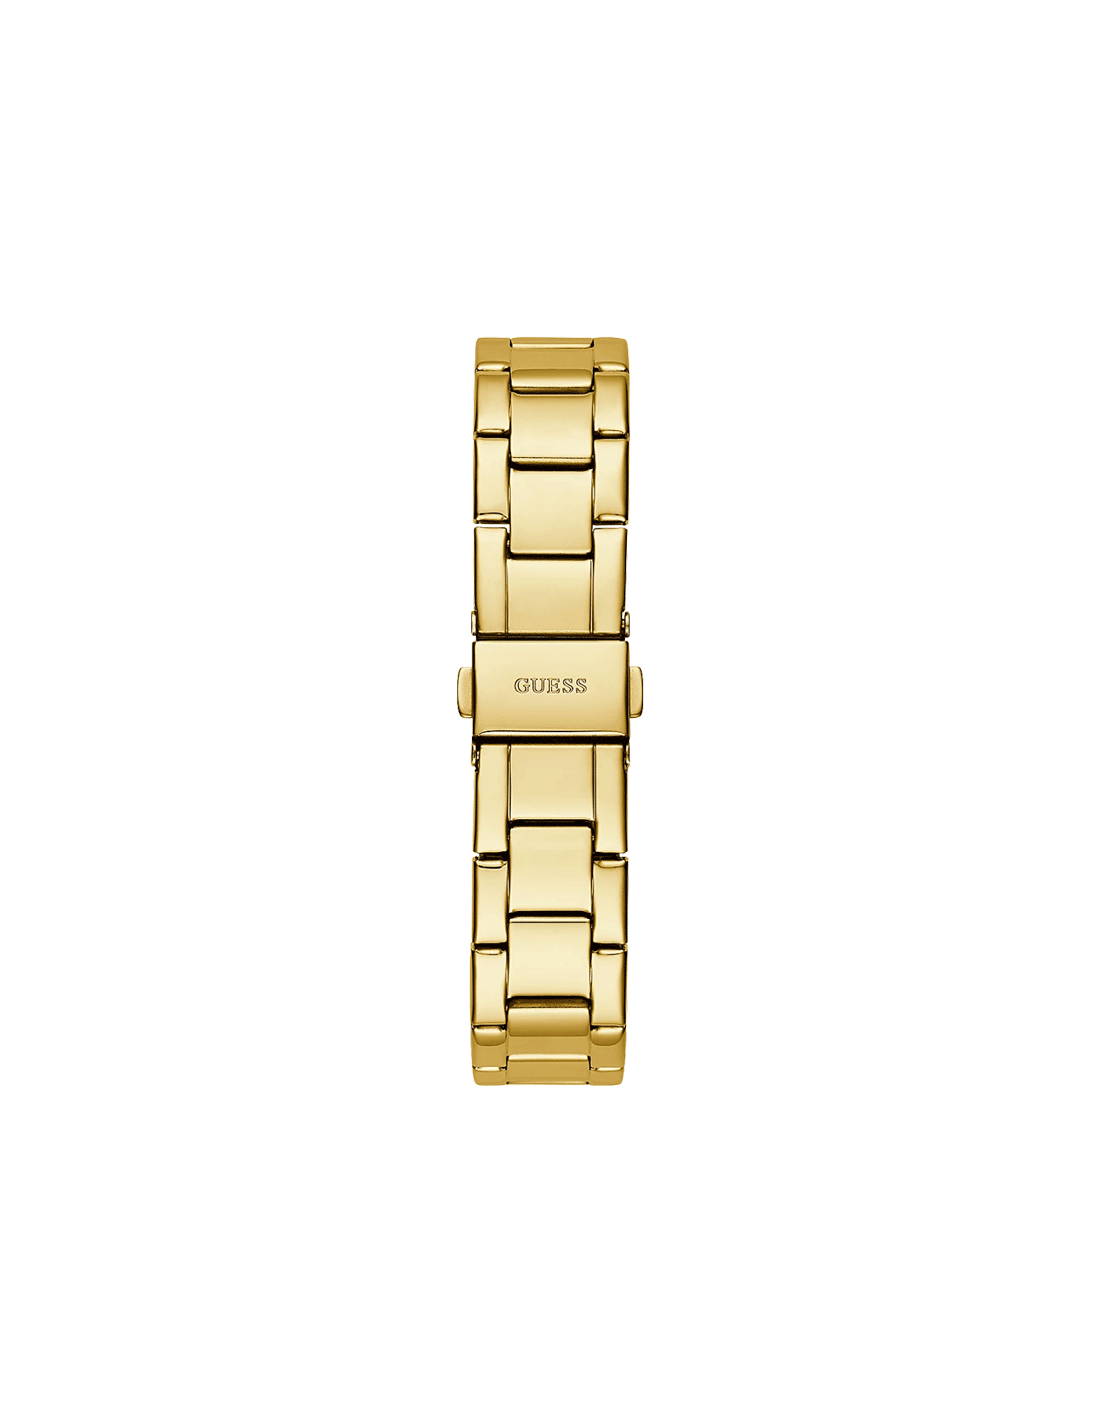 Reloj Guess Mujer COSMIC GW0465L1 Acero Inoxidable dorado multifunció